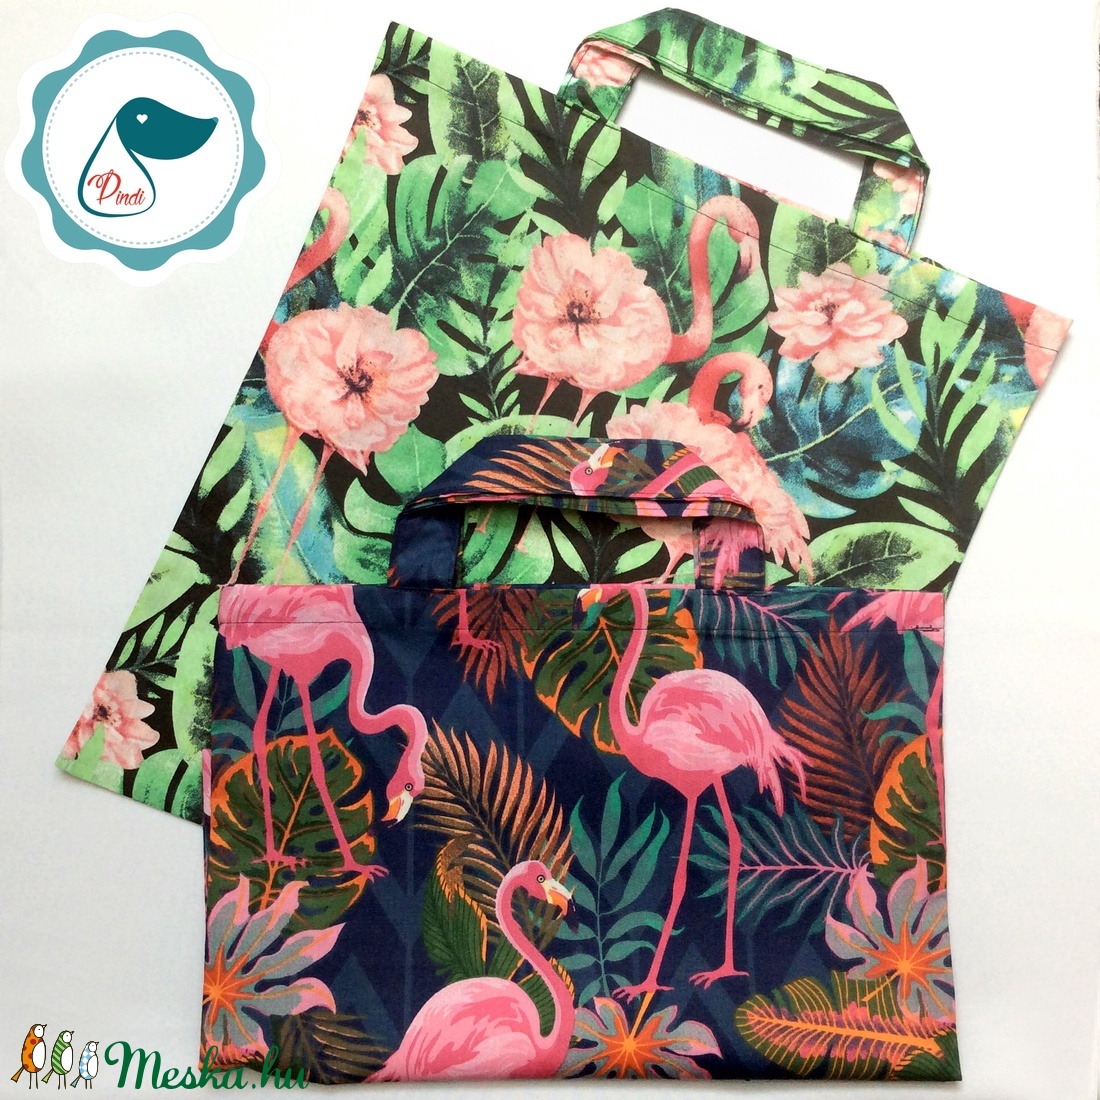 Szatyor - flamingós mintás textil táska - bevásárló táska  - egyedi bevásárló szatyor - textil szatyor - mosható szatyor - táska & tok - bevásárlás & shopper táska - shopper, textiltáska, szatyor - Meska.hu